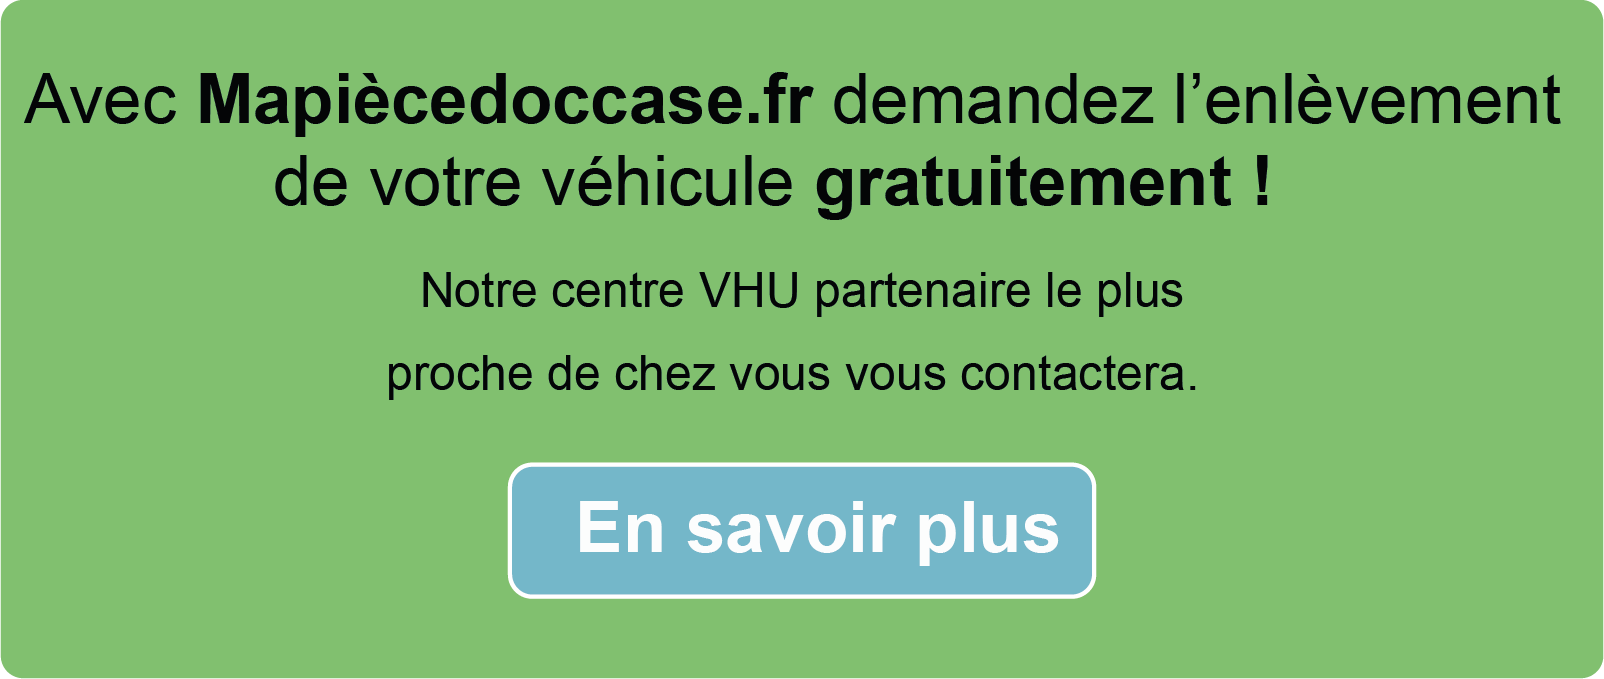 Demandez l'enlèvement de votre véhicule sur Mapiècedoccase.fr